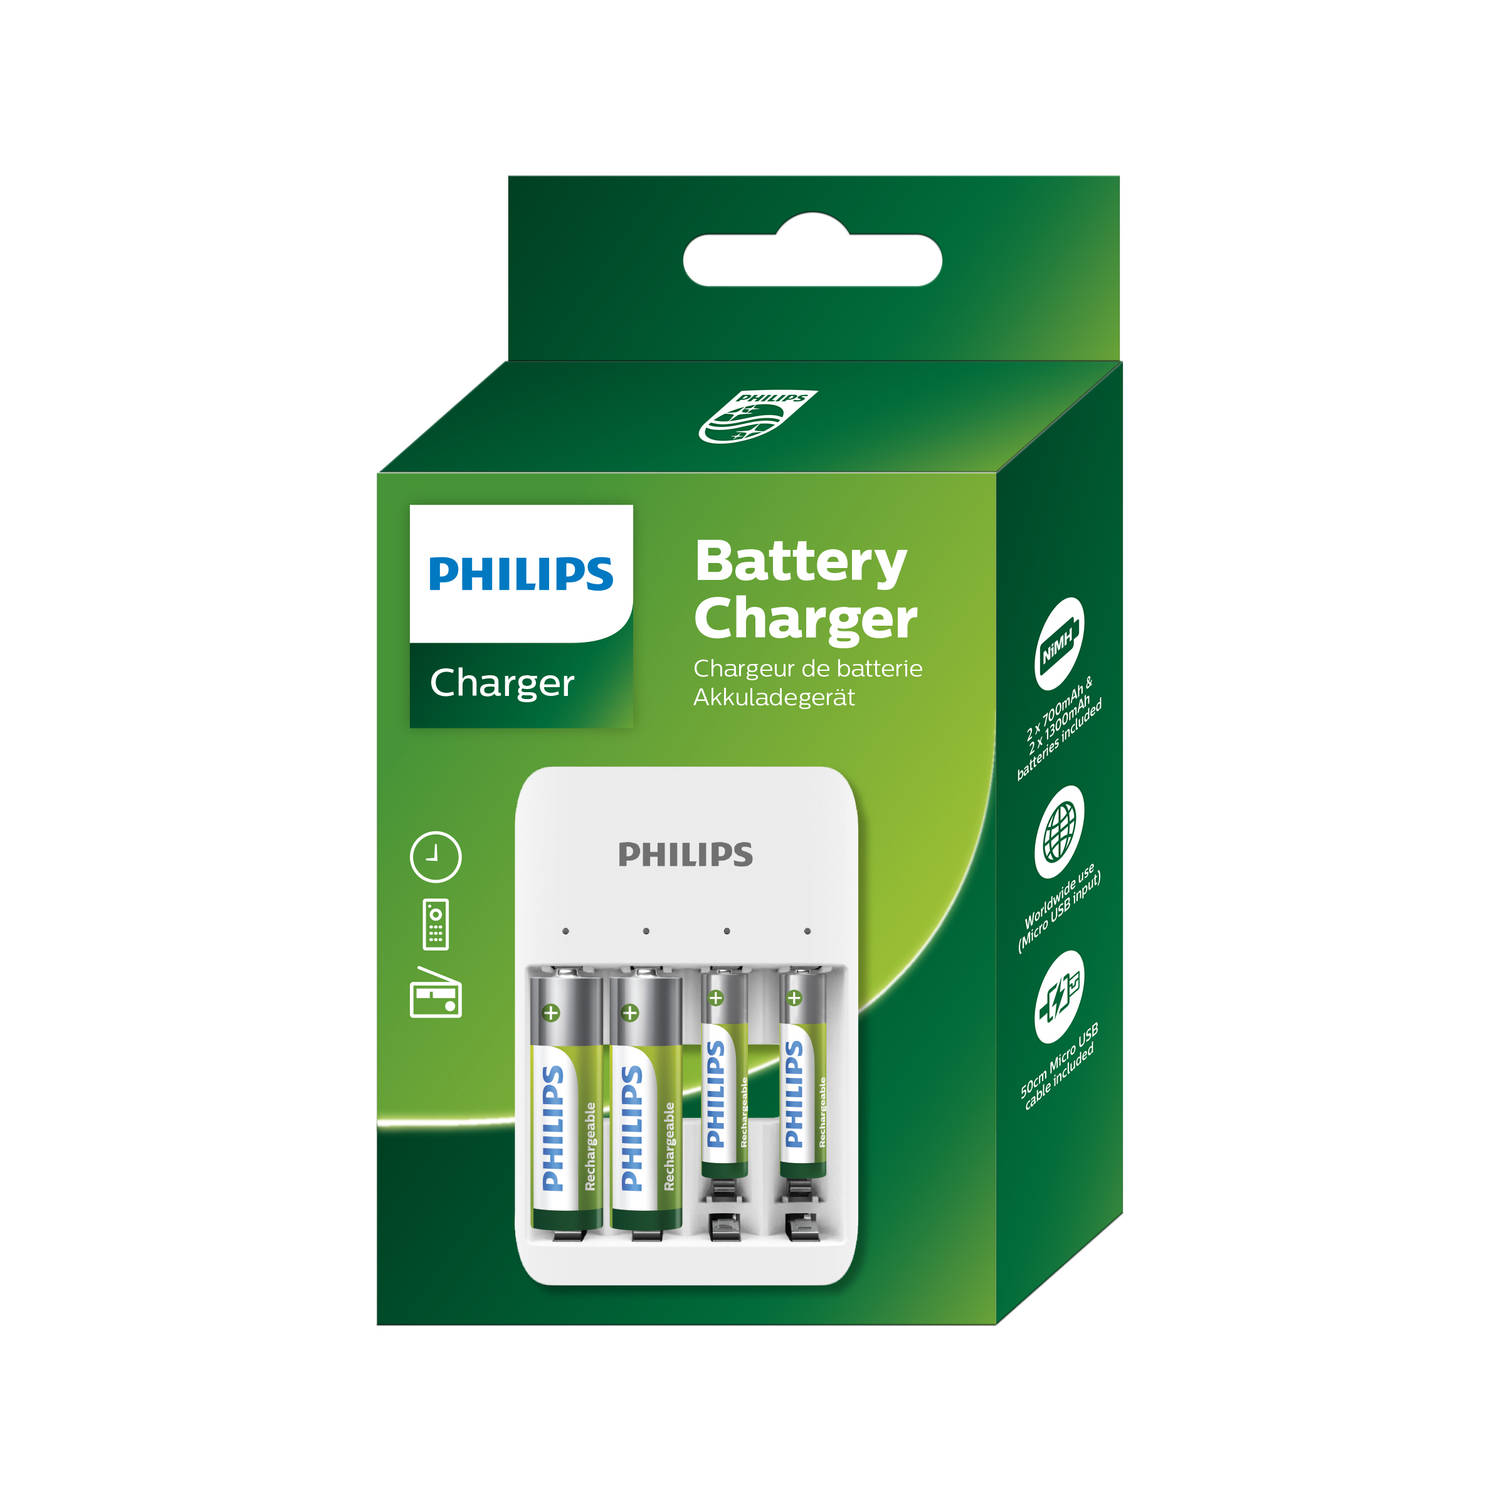 Detecteerbaar laag Blijkbaar Philips Batterij Oplader - USB Oplaadbaar - Incl. AA Batterijen en AAA  Batterijen - Universele Batterijlader | Blokker